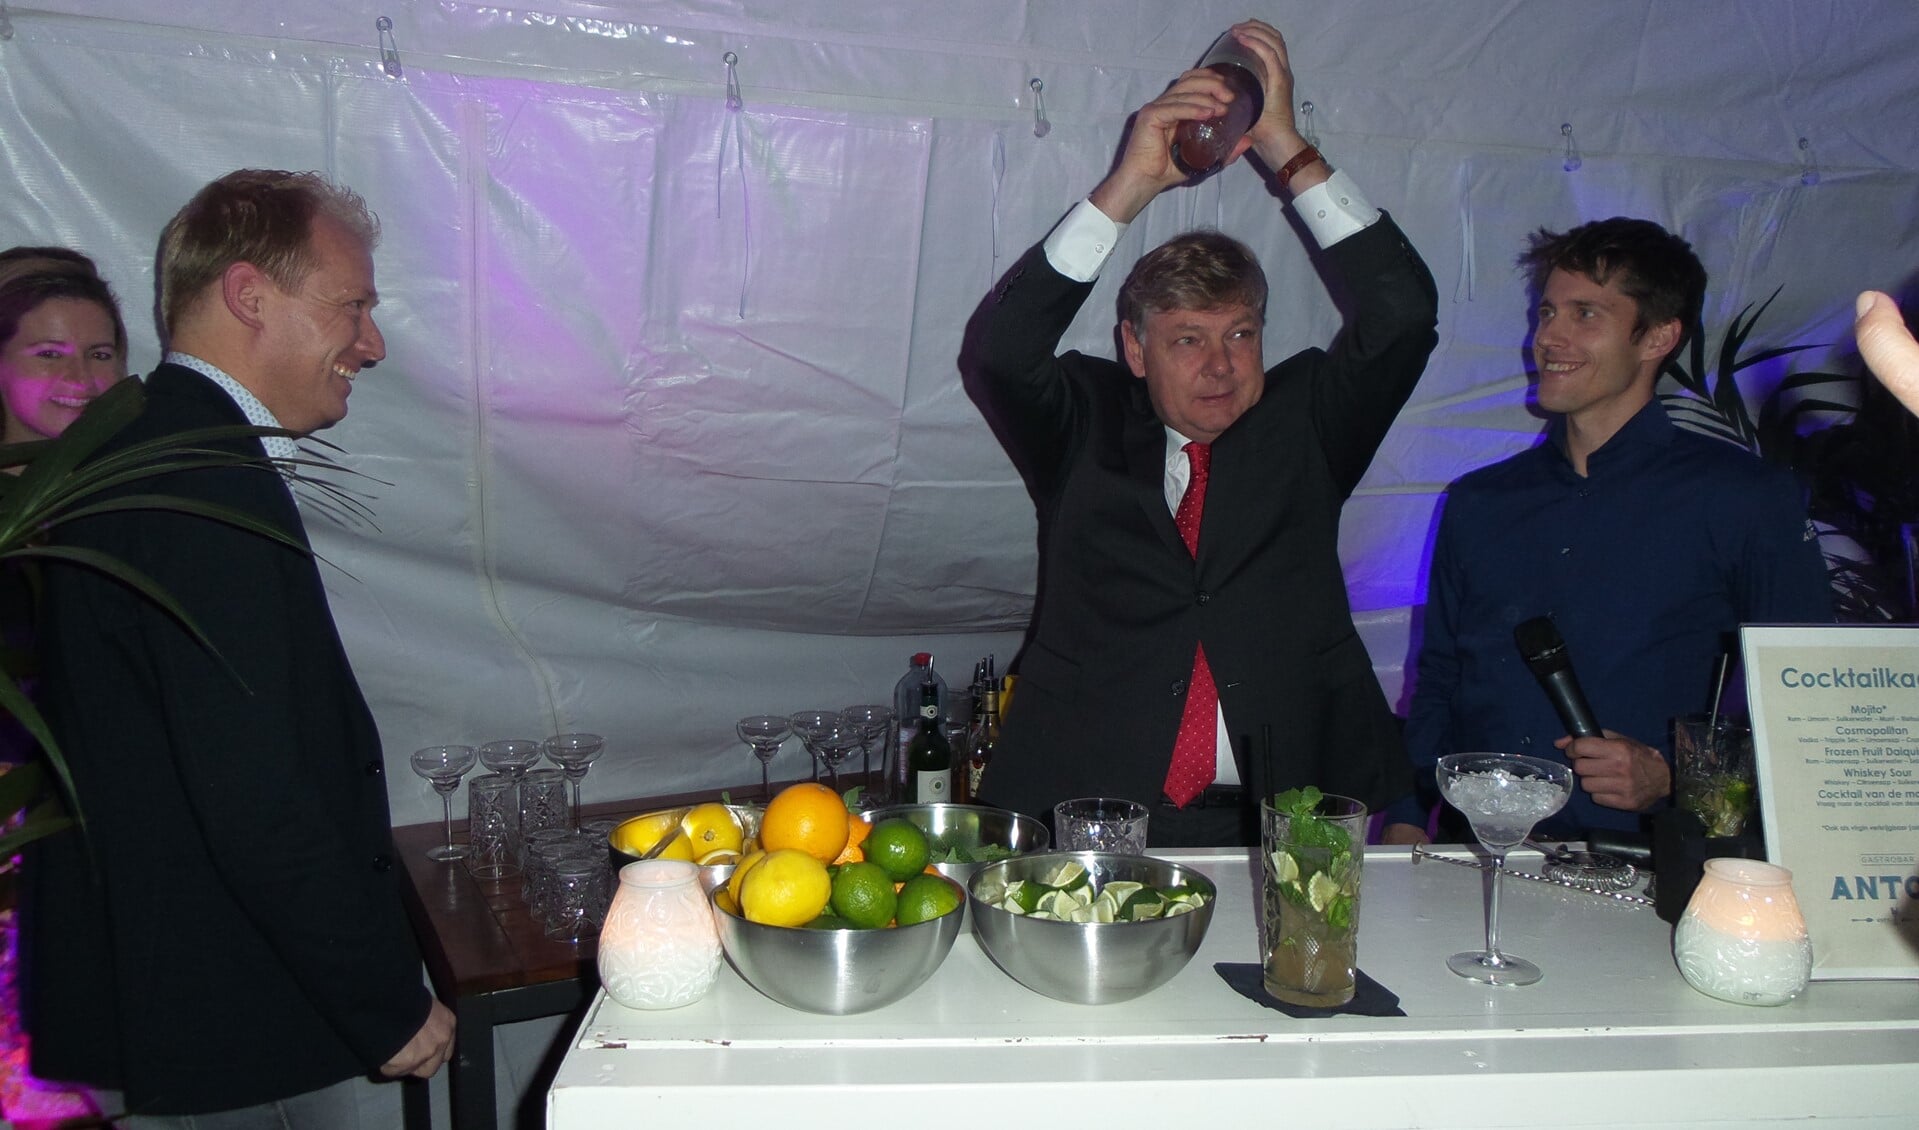 Burgemeester Elbert Roest laat zijn talenten als cocktailmixer zien als opening van de gastrobar. Links kijkt eigenaar Jeroen Hermsen met plezier toe.